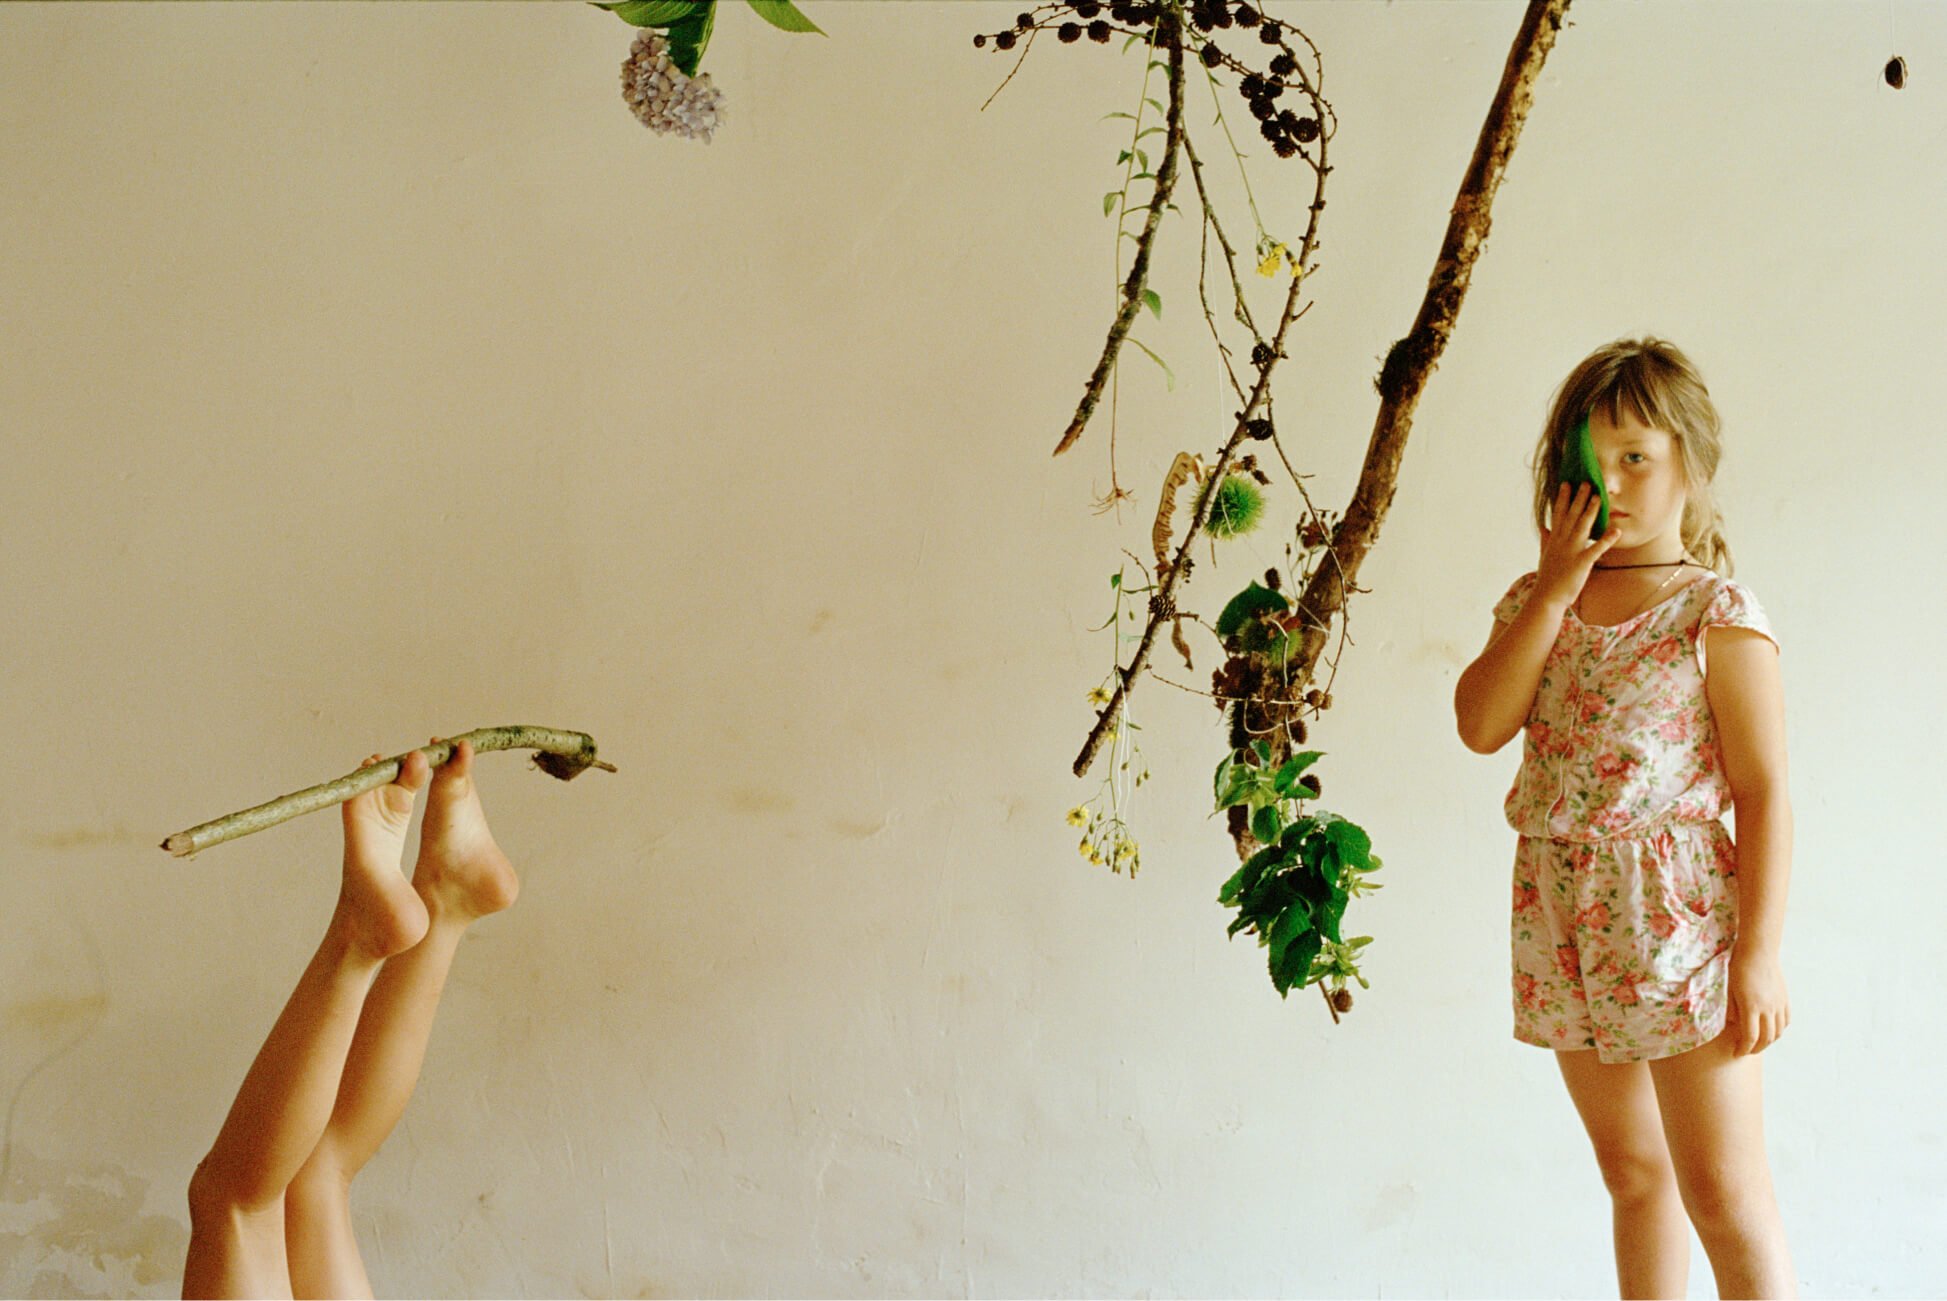 Une jeune fille tient une branche avec ses orteils tandis qu’une autre se couvre l’œil avec une grande feuille.